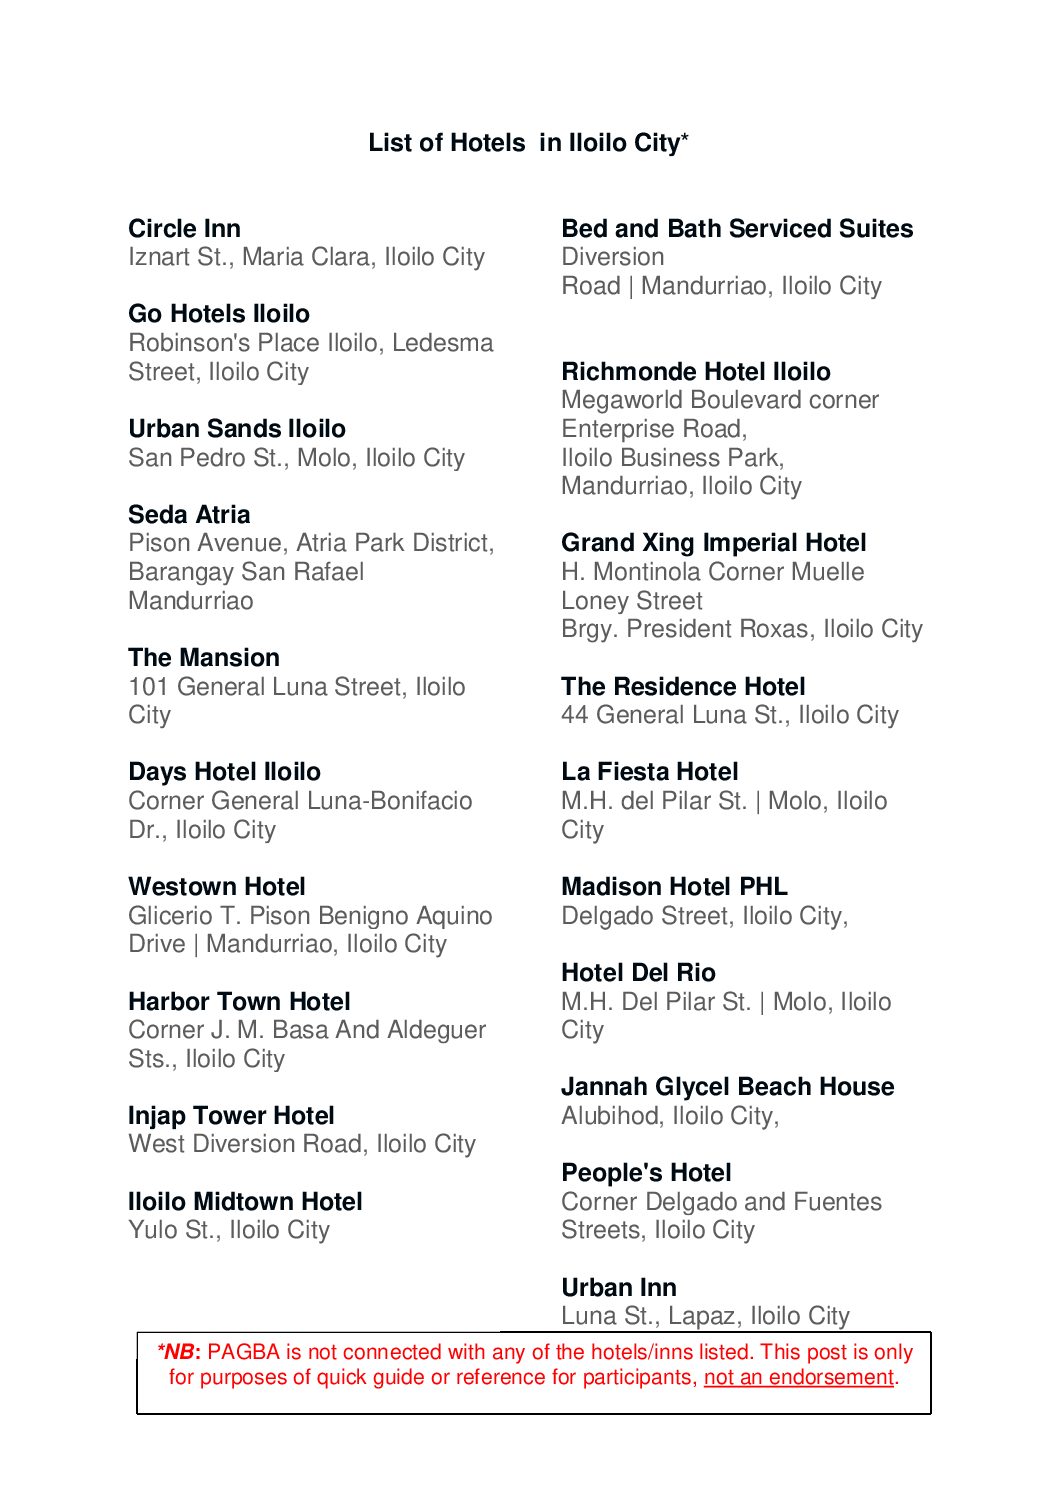 List of Hotels/Inns in Iloilo City